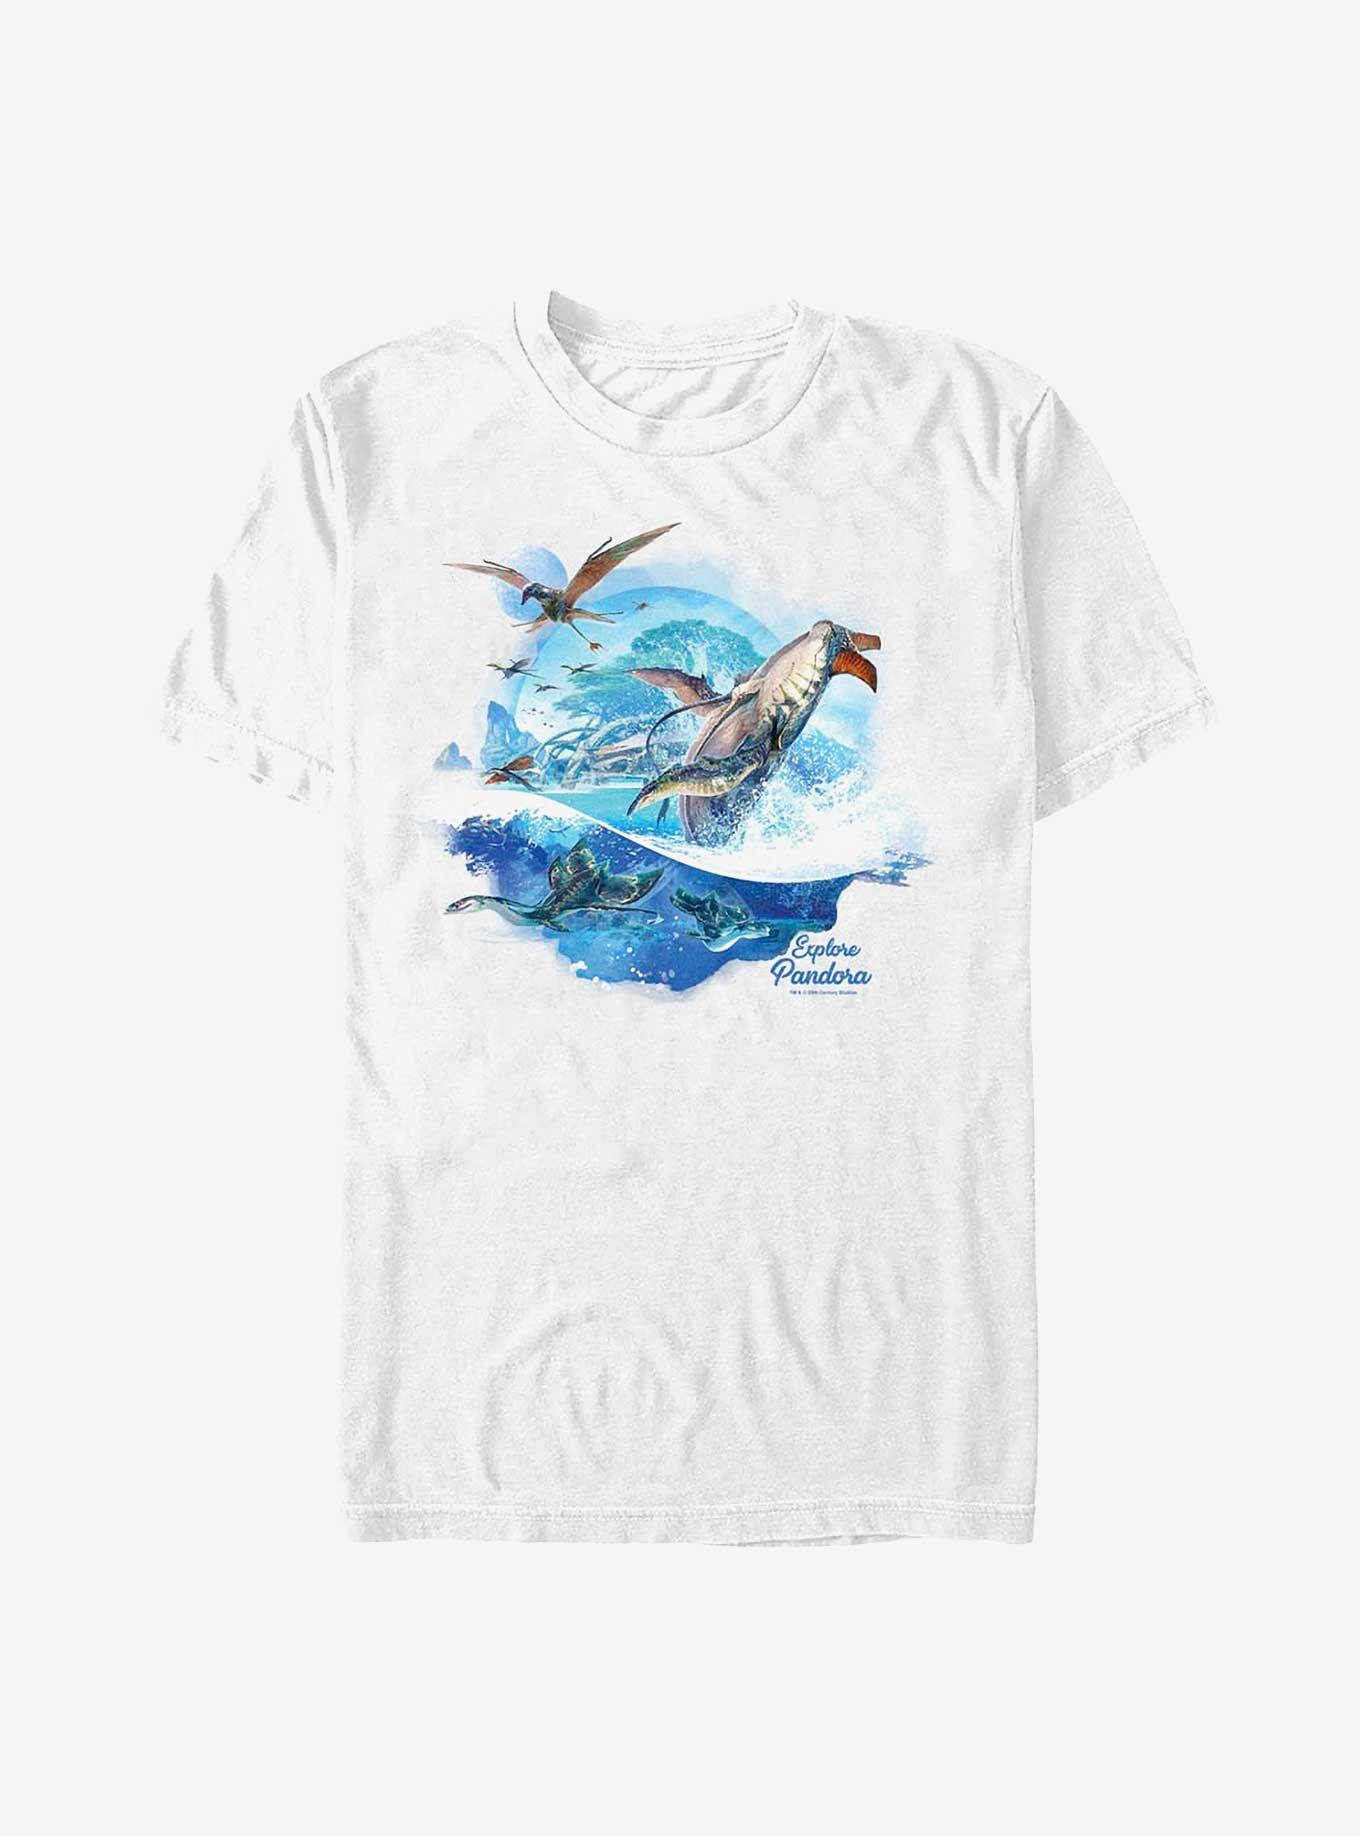 Avatar: The Way of Water Creatures Pandora T-Shirt